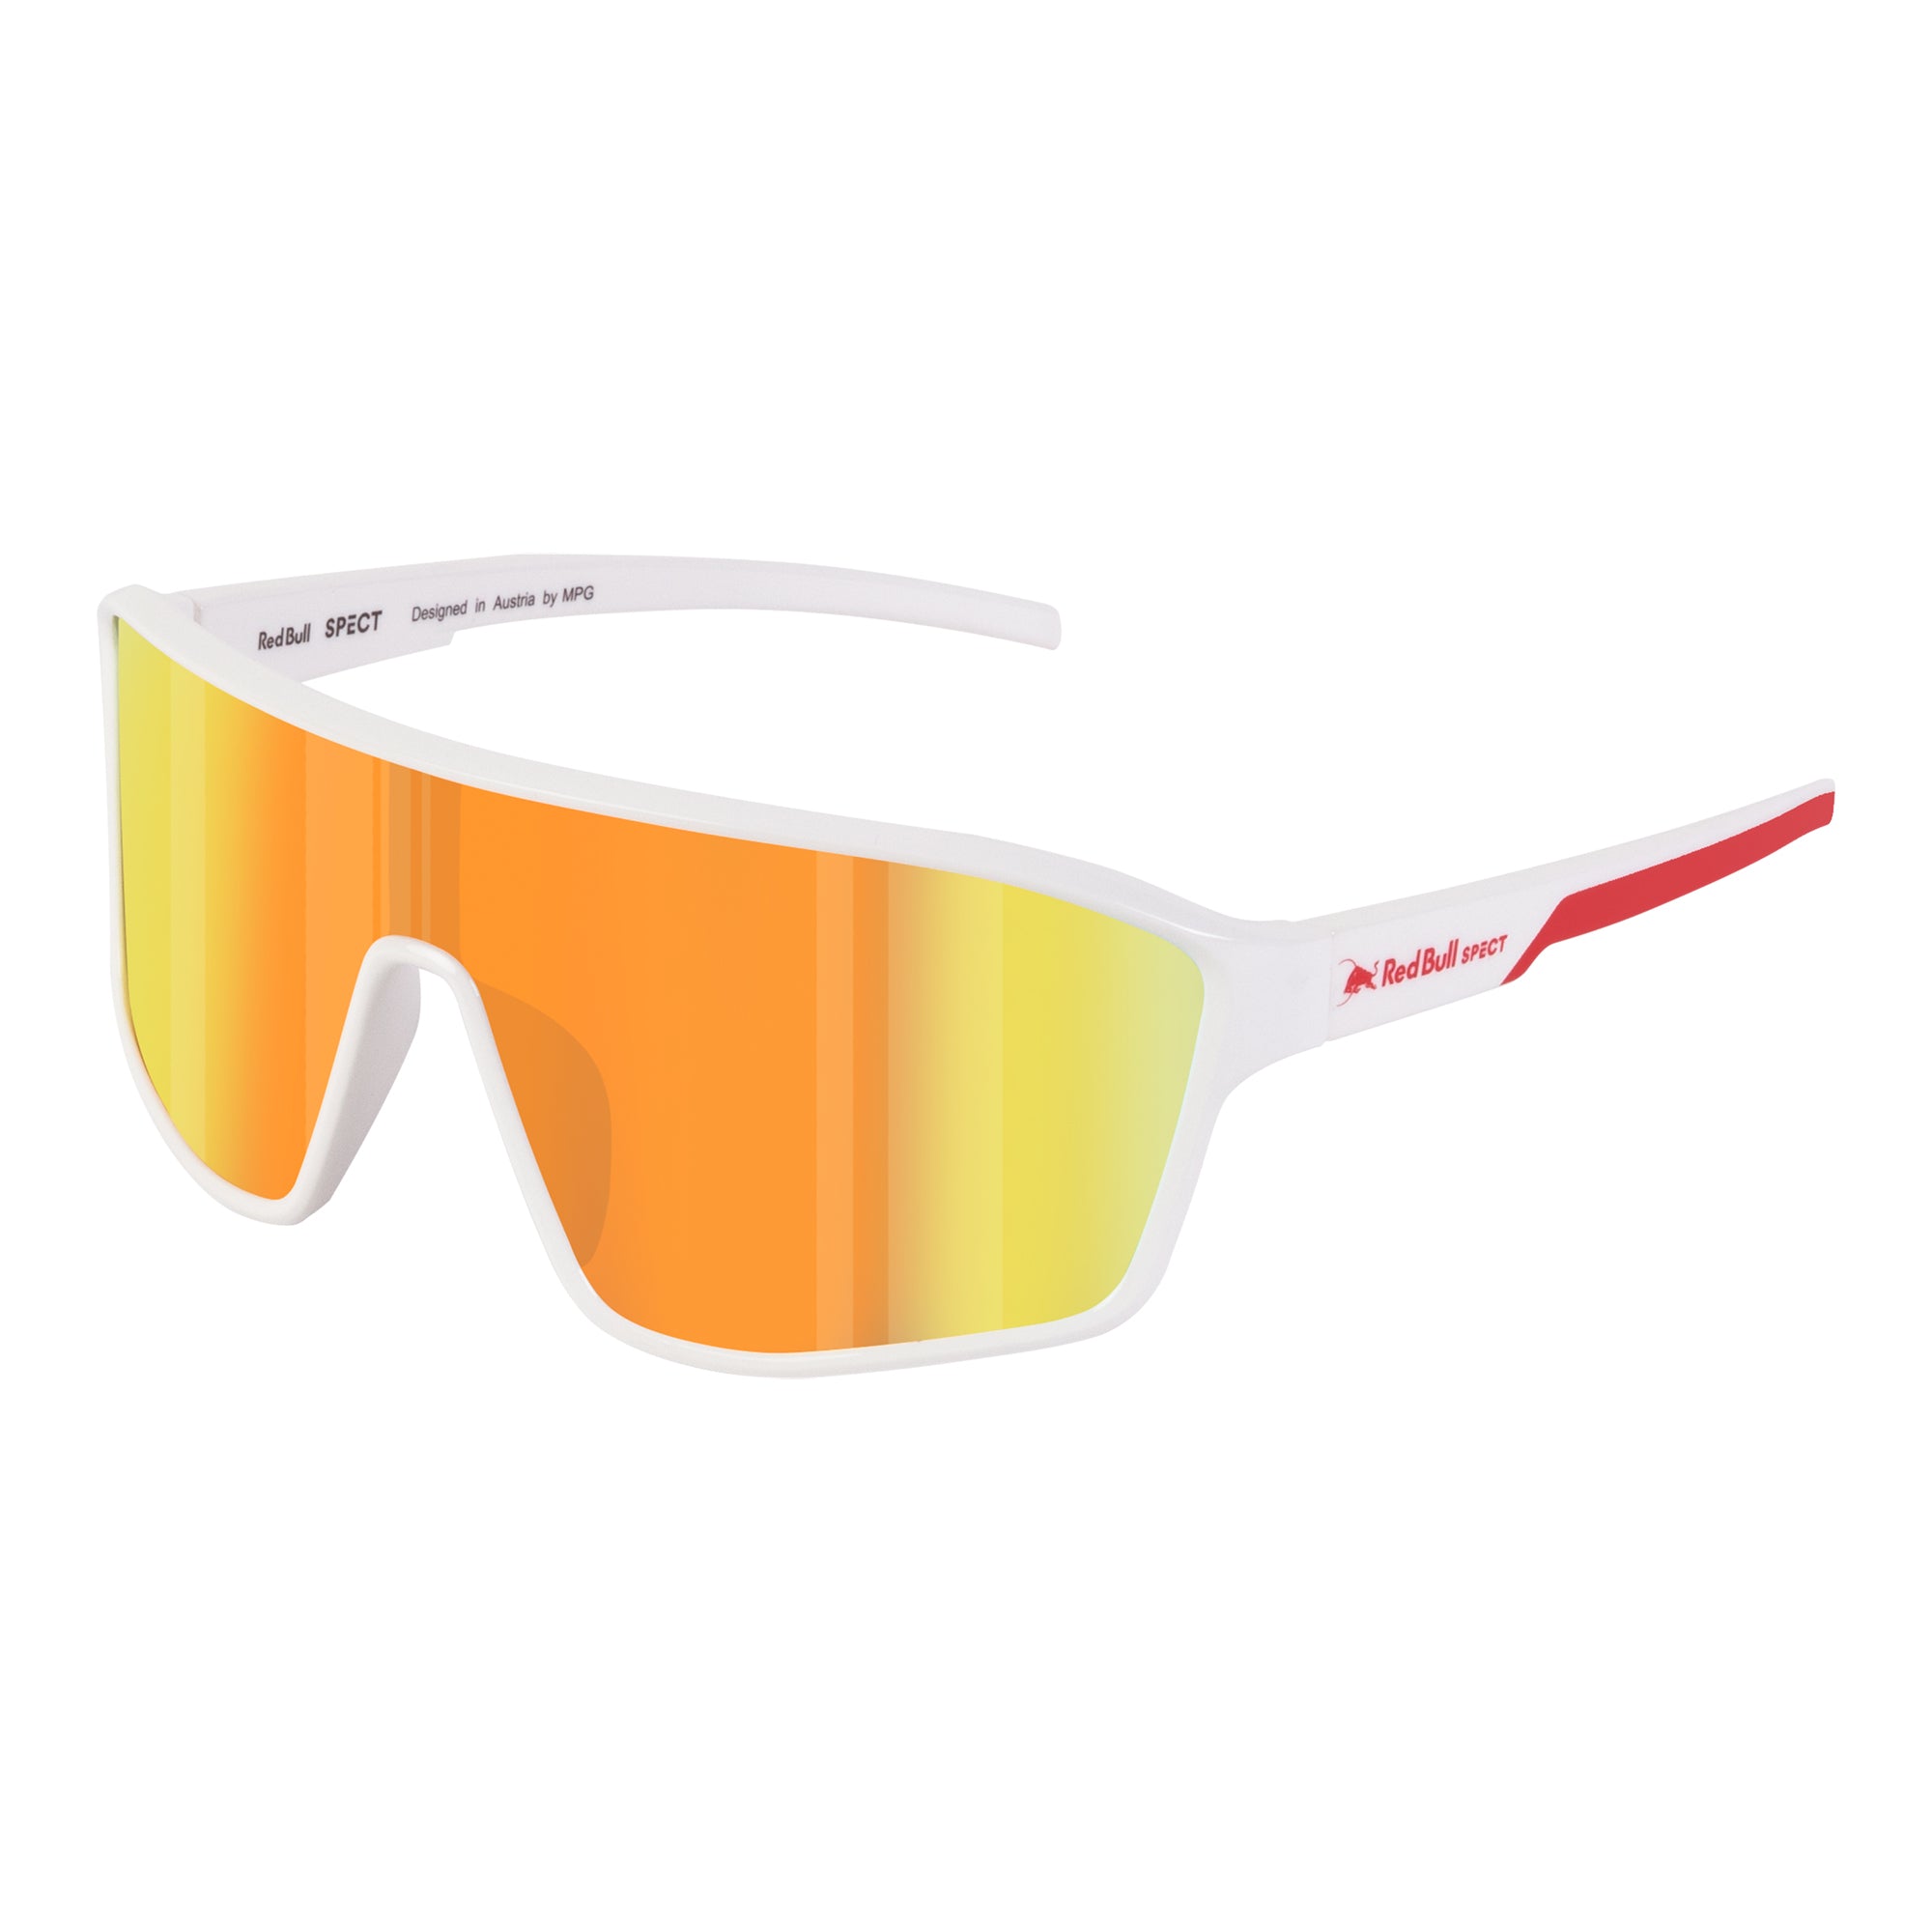 Red Bull Spect DAFT-002 Sunglasses